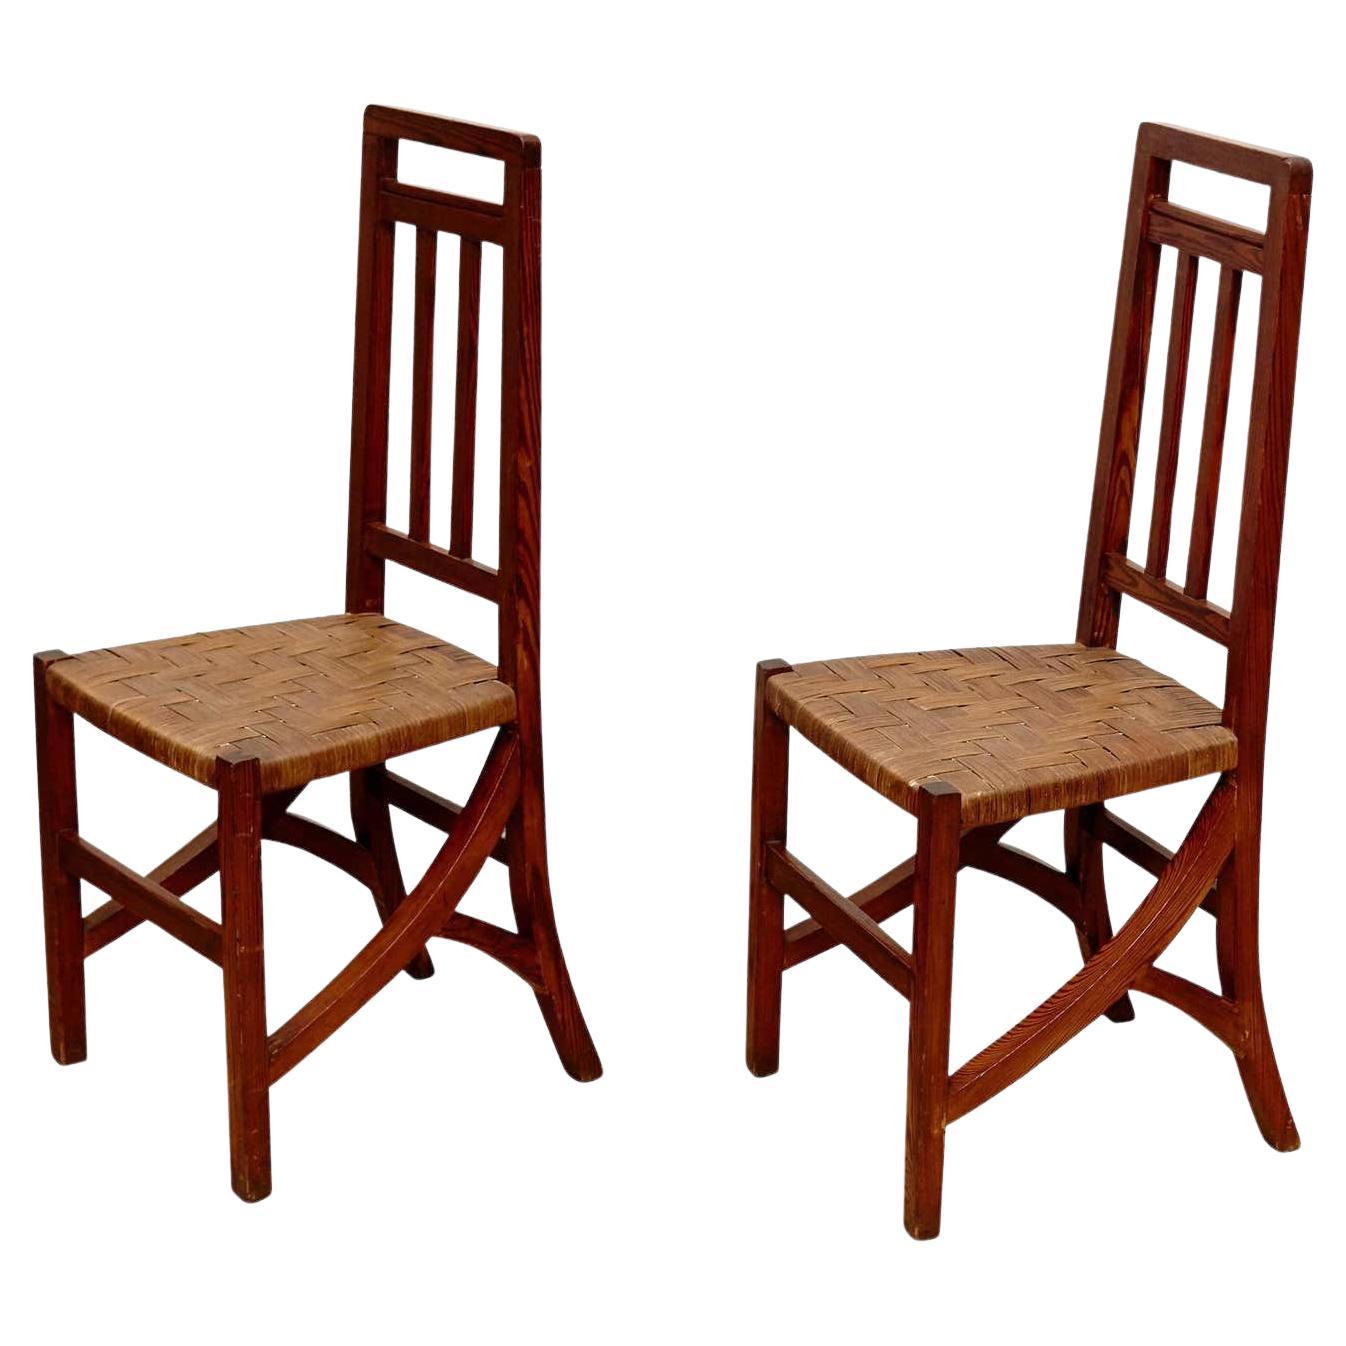 Ensemble de deux chaises Arts & Crafts en bois et rotin, datant d'environ 1910